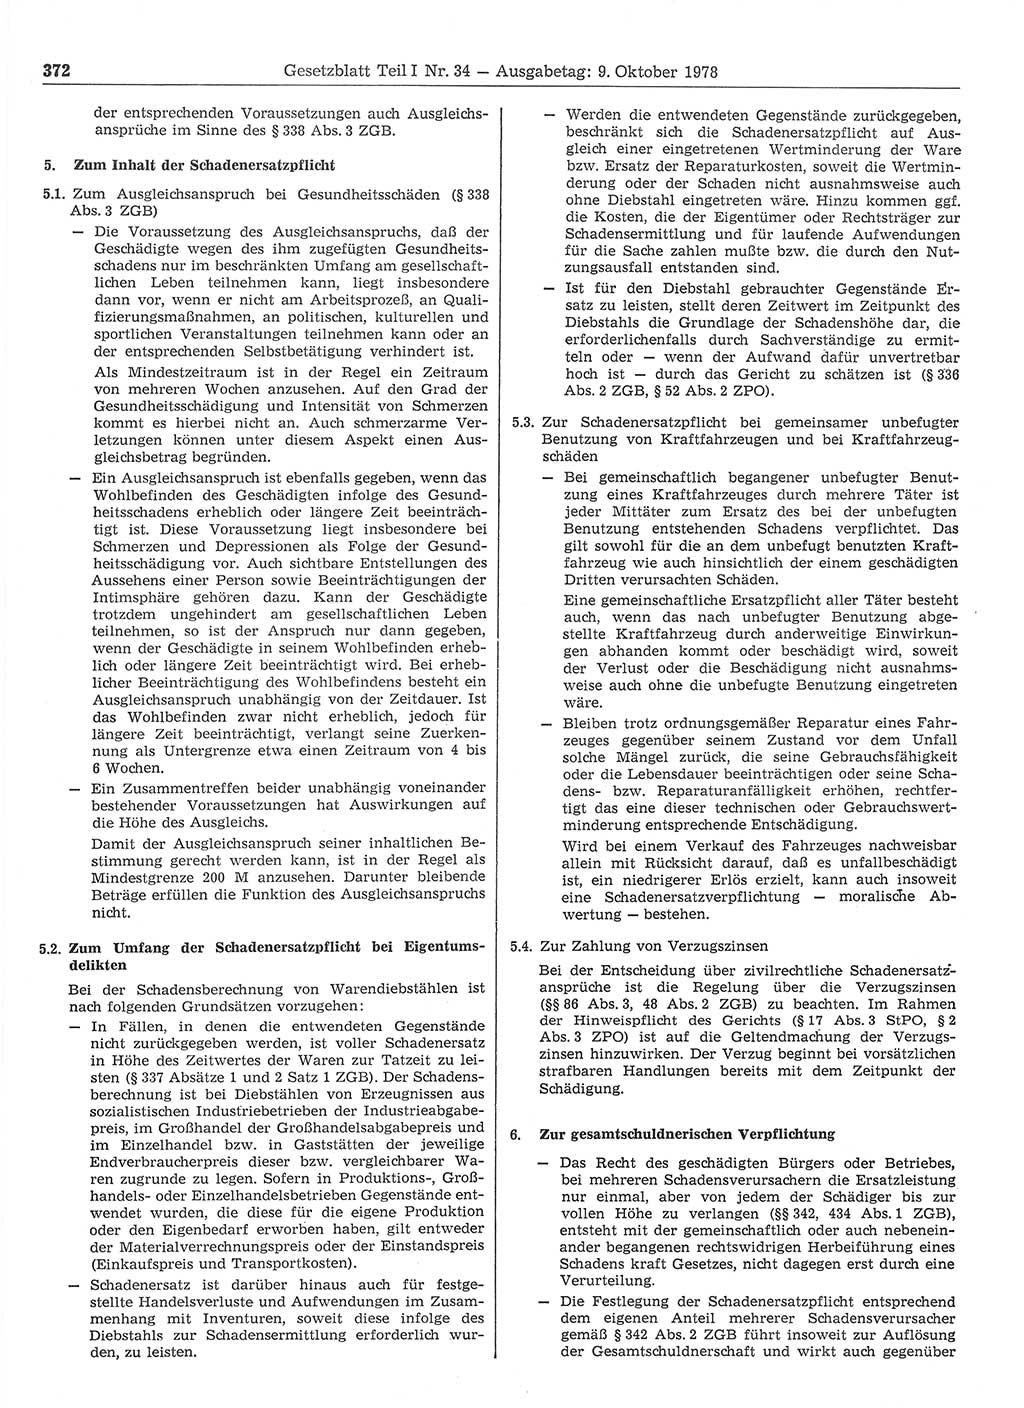 Gesetzblatt (GBl.) der Deutschen Demokratischen Republik (DDR) Teil Ⅰ 1978, Seite 372 (GBl. DDR Ⅰ 1978, S. 372)